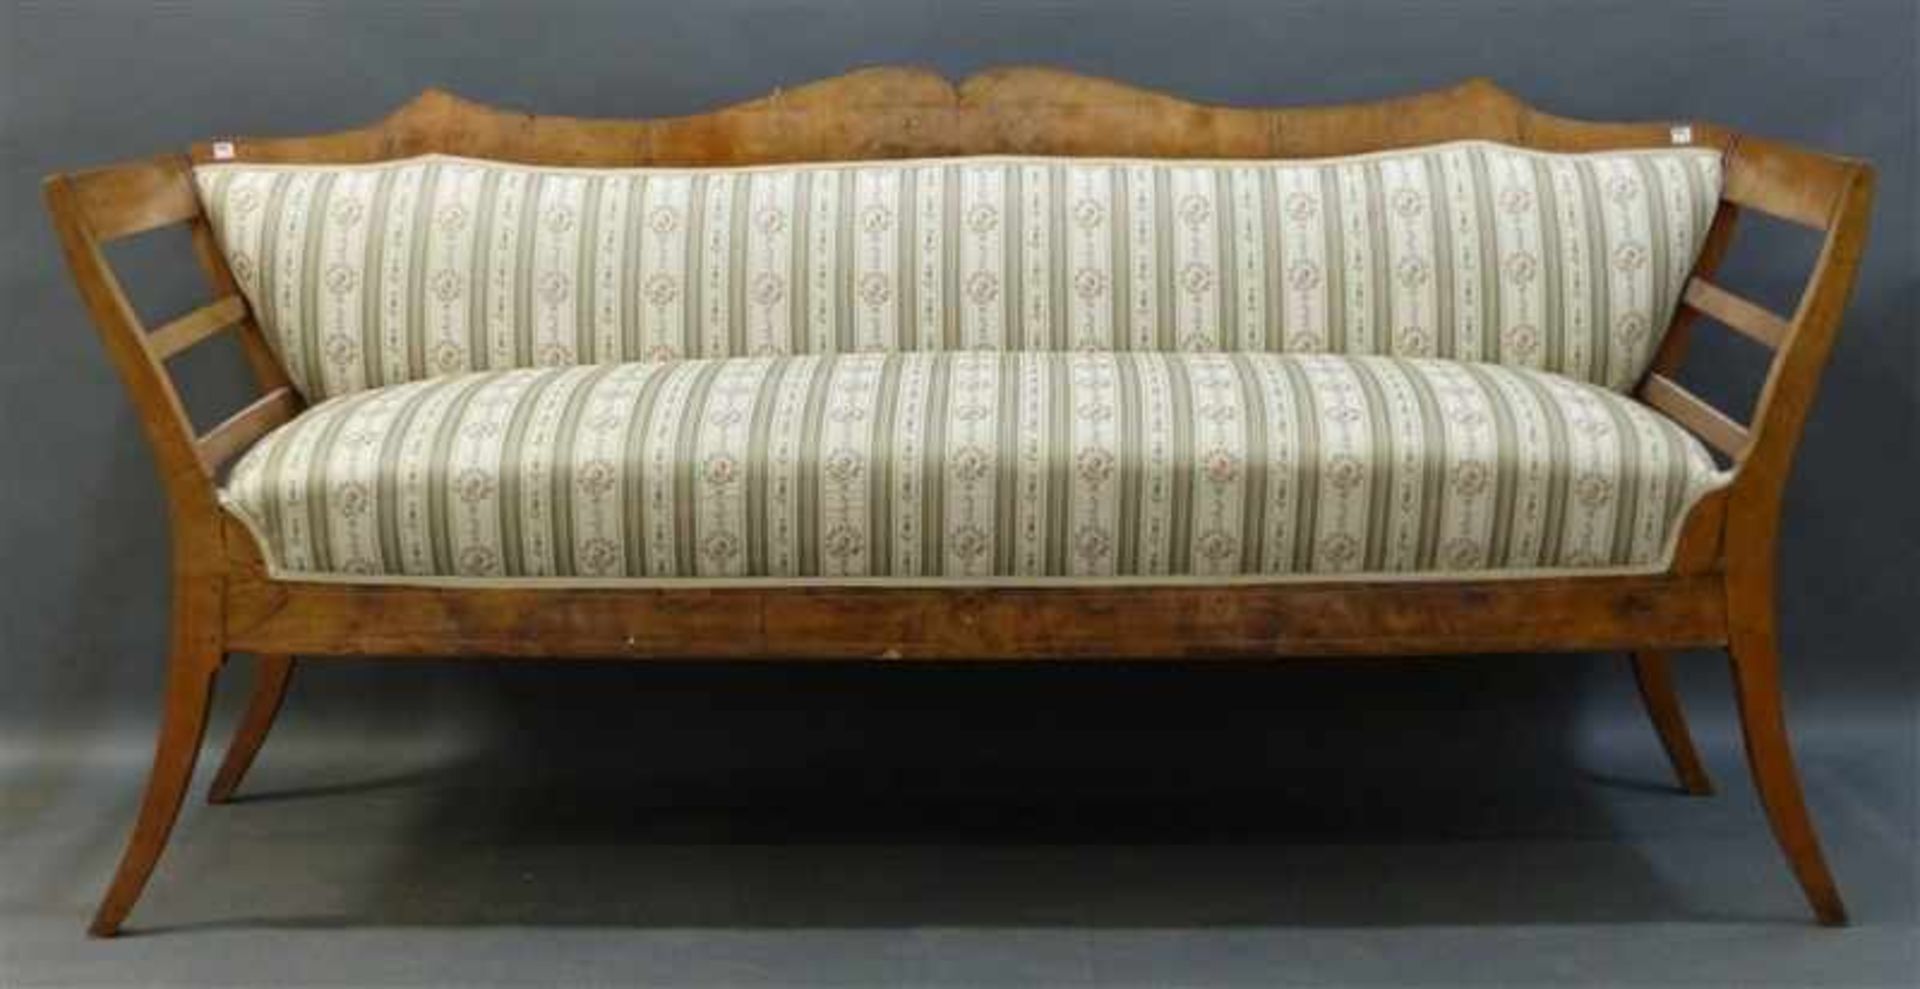 Sitzbank, um 1800 Nussbaum, intarsiert, Furnierschäden, floraler Streifenbezug, h 100 cm, b 210